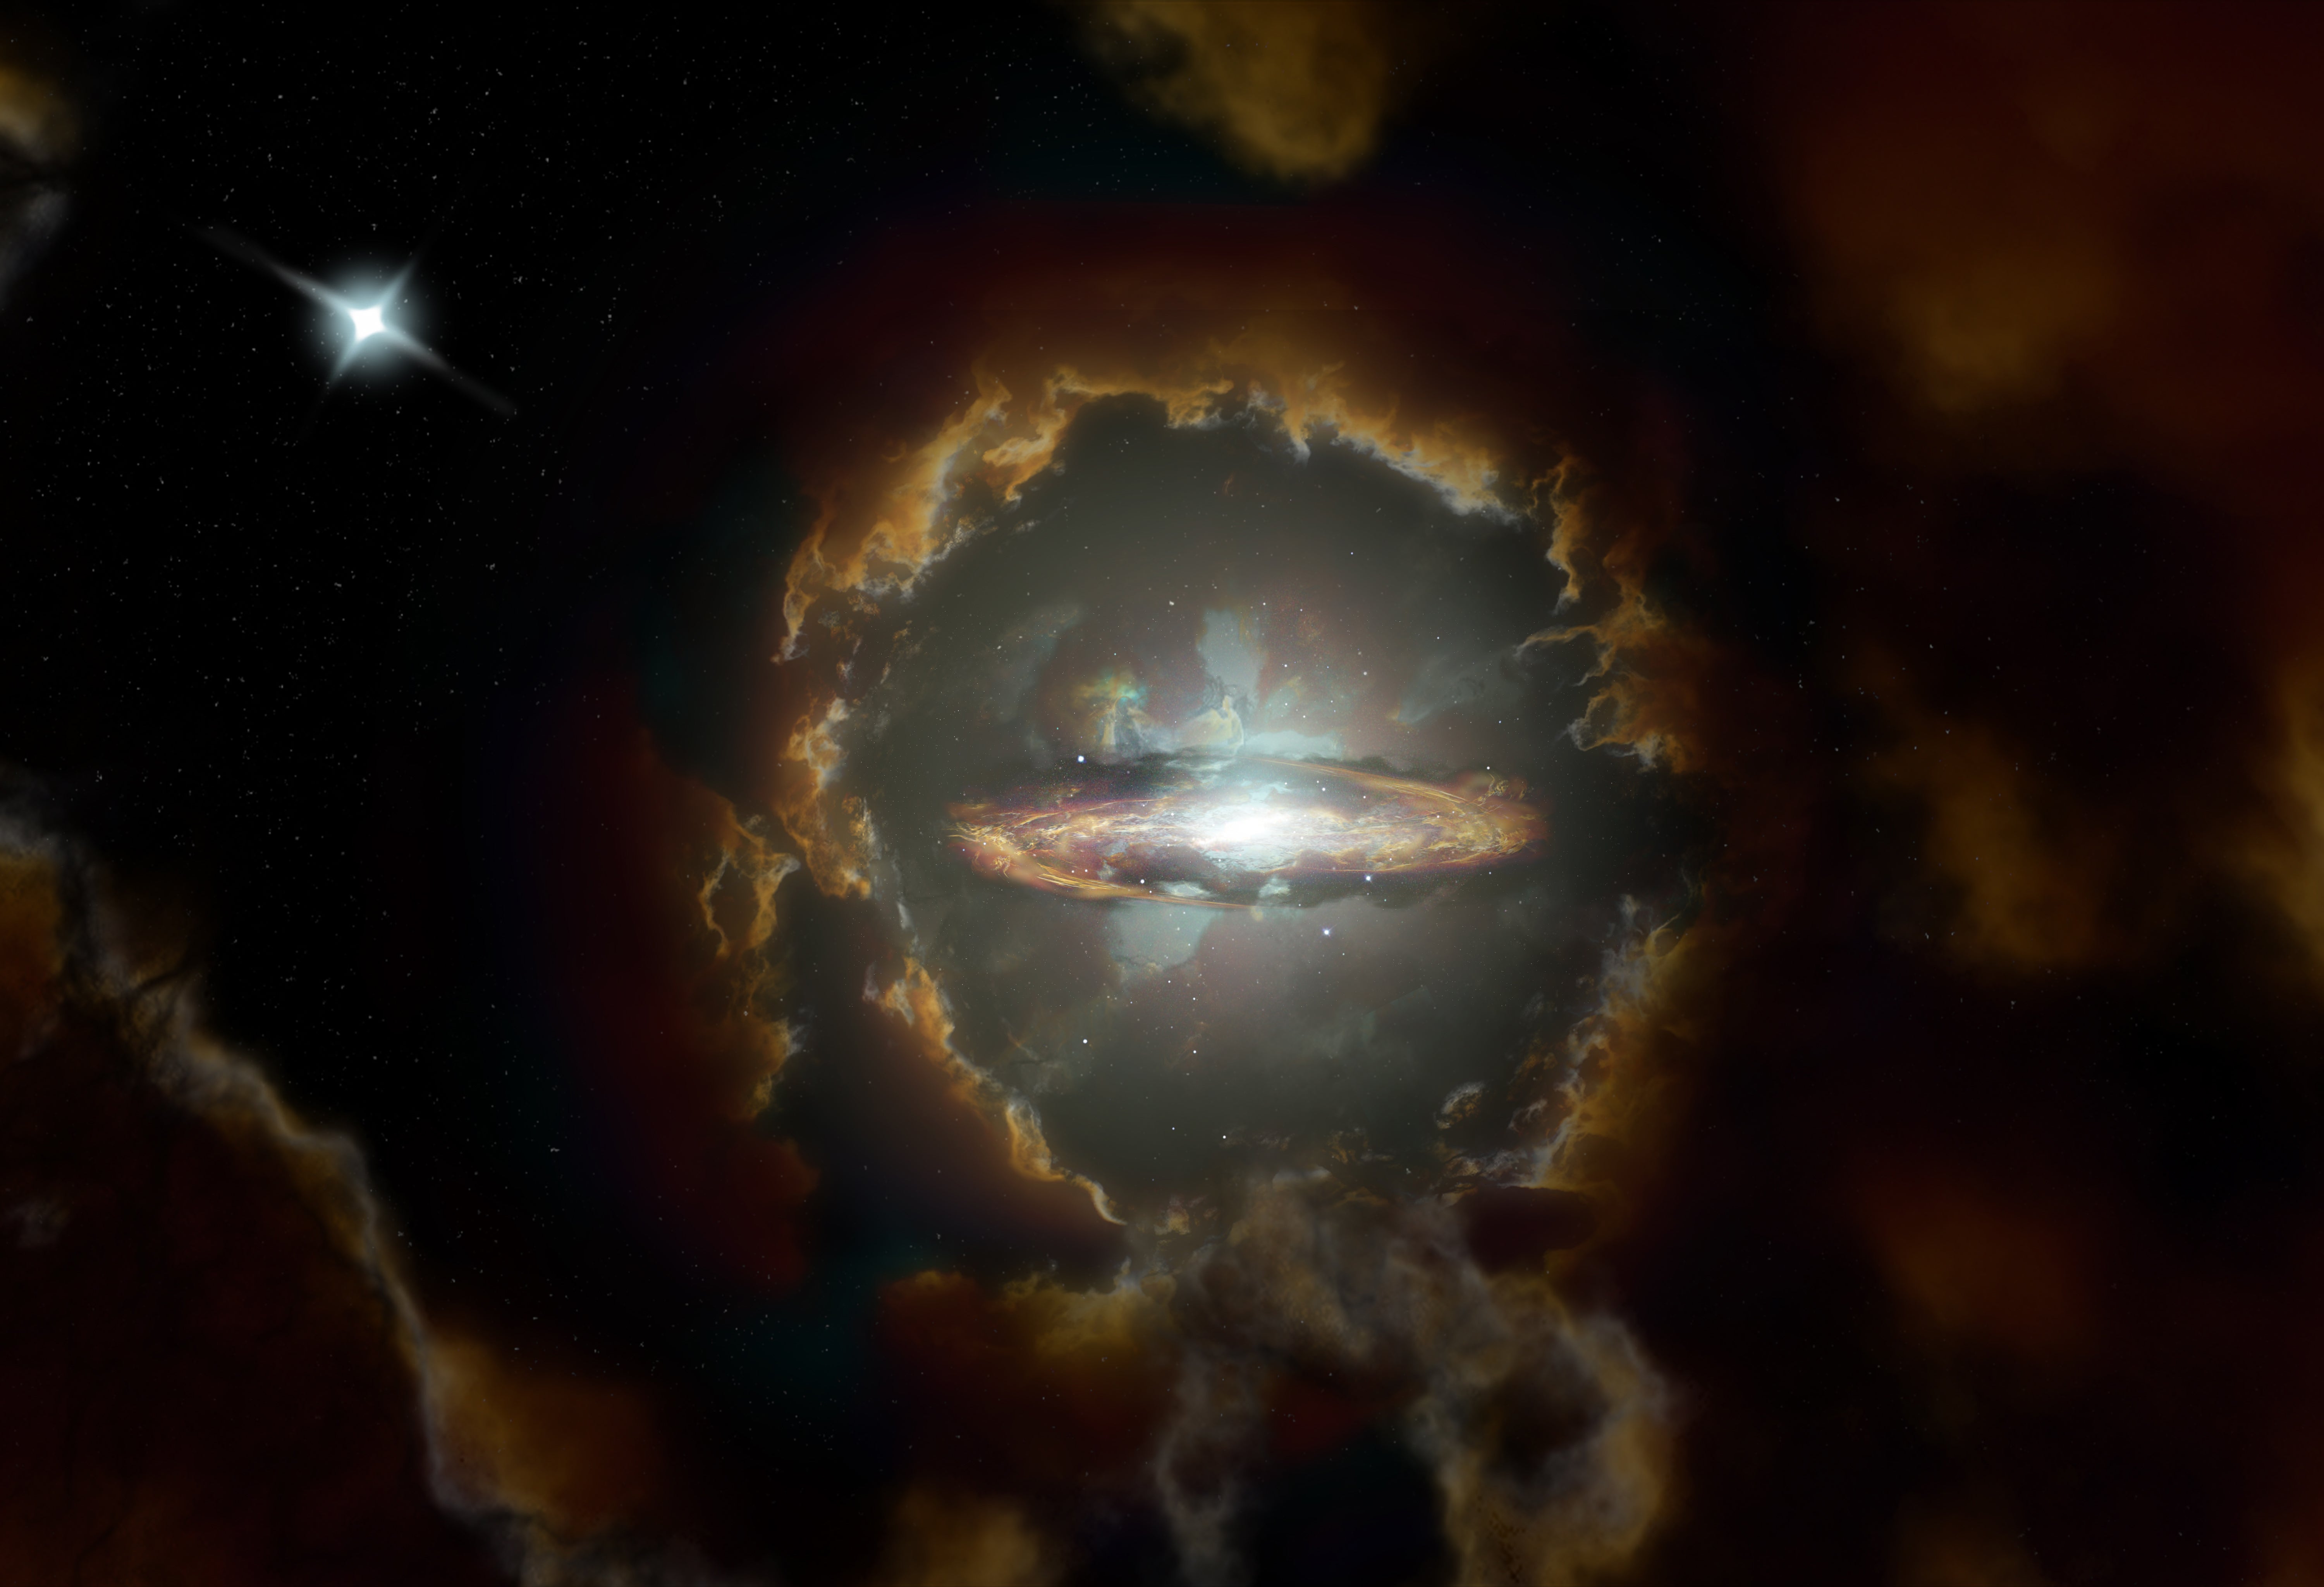 متاخم مستنقع نقع  علماء الفلك يرصدون مجرة عملاقة هي الأقدم إلى الآن في تاريخ الكون - للعِلم